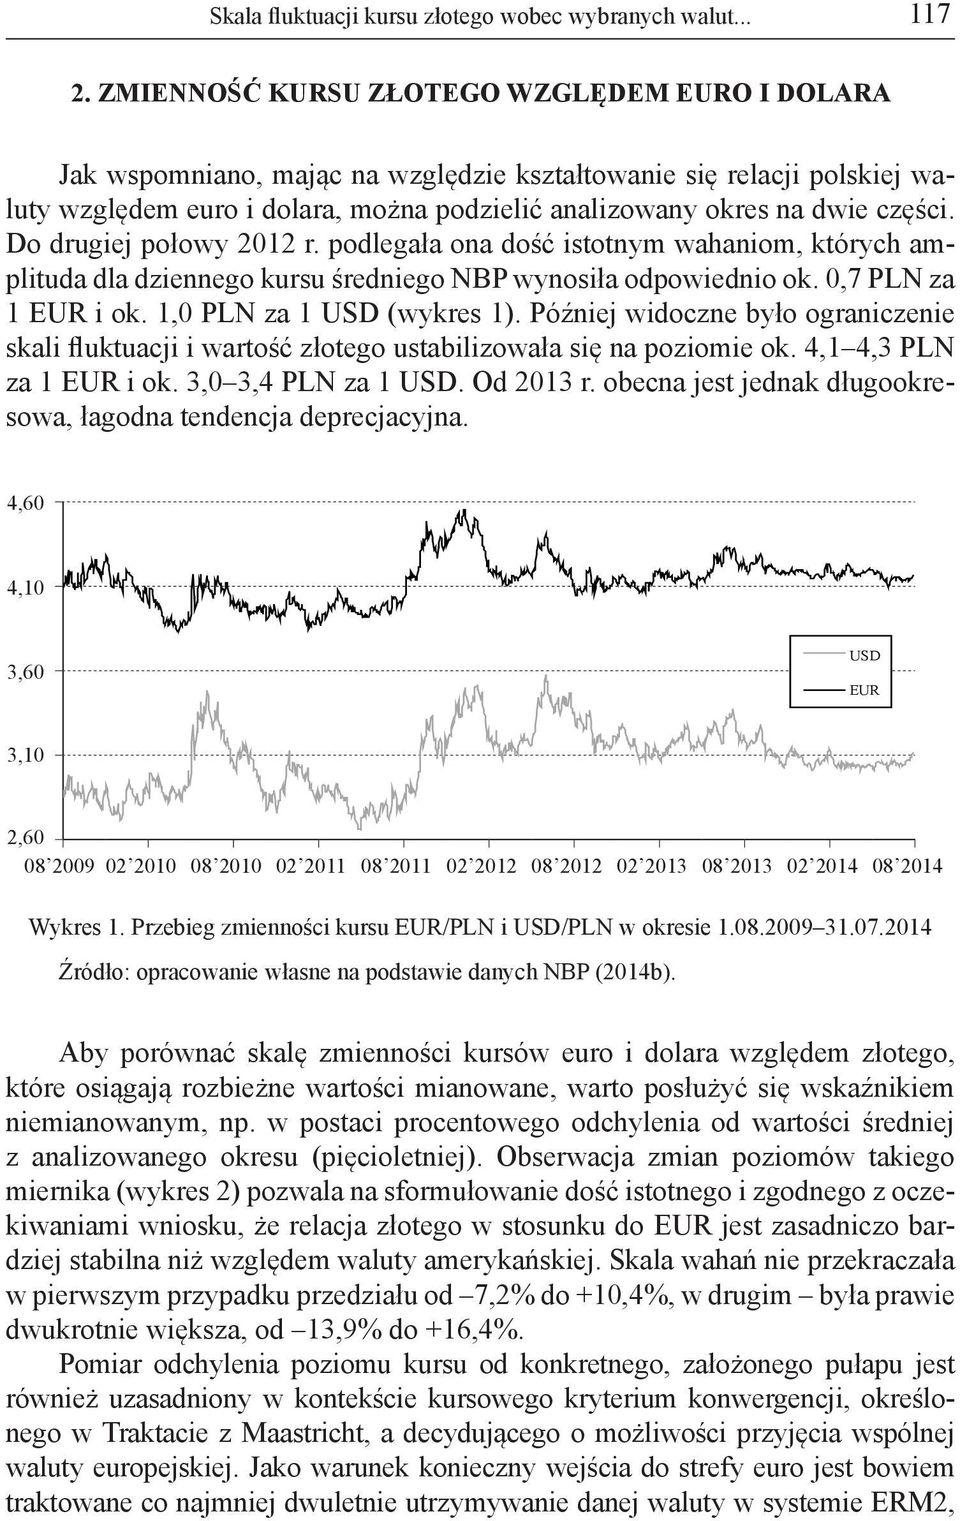 Do drugiej połowy 2012 r. podlegała ona dość istotnym wahaniom, których amplituda dla dziennego kursu średniego NBP wynosiła odpowiednio ok. 0,7 PLN za 1 EUR i ok. 1,0 PLN za 1 USD (wykres 1).